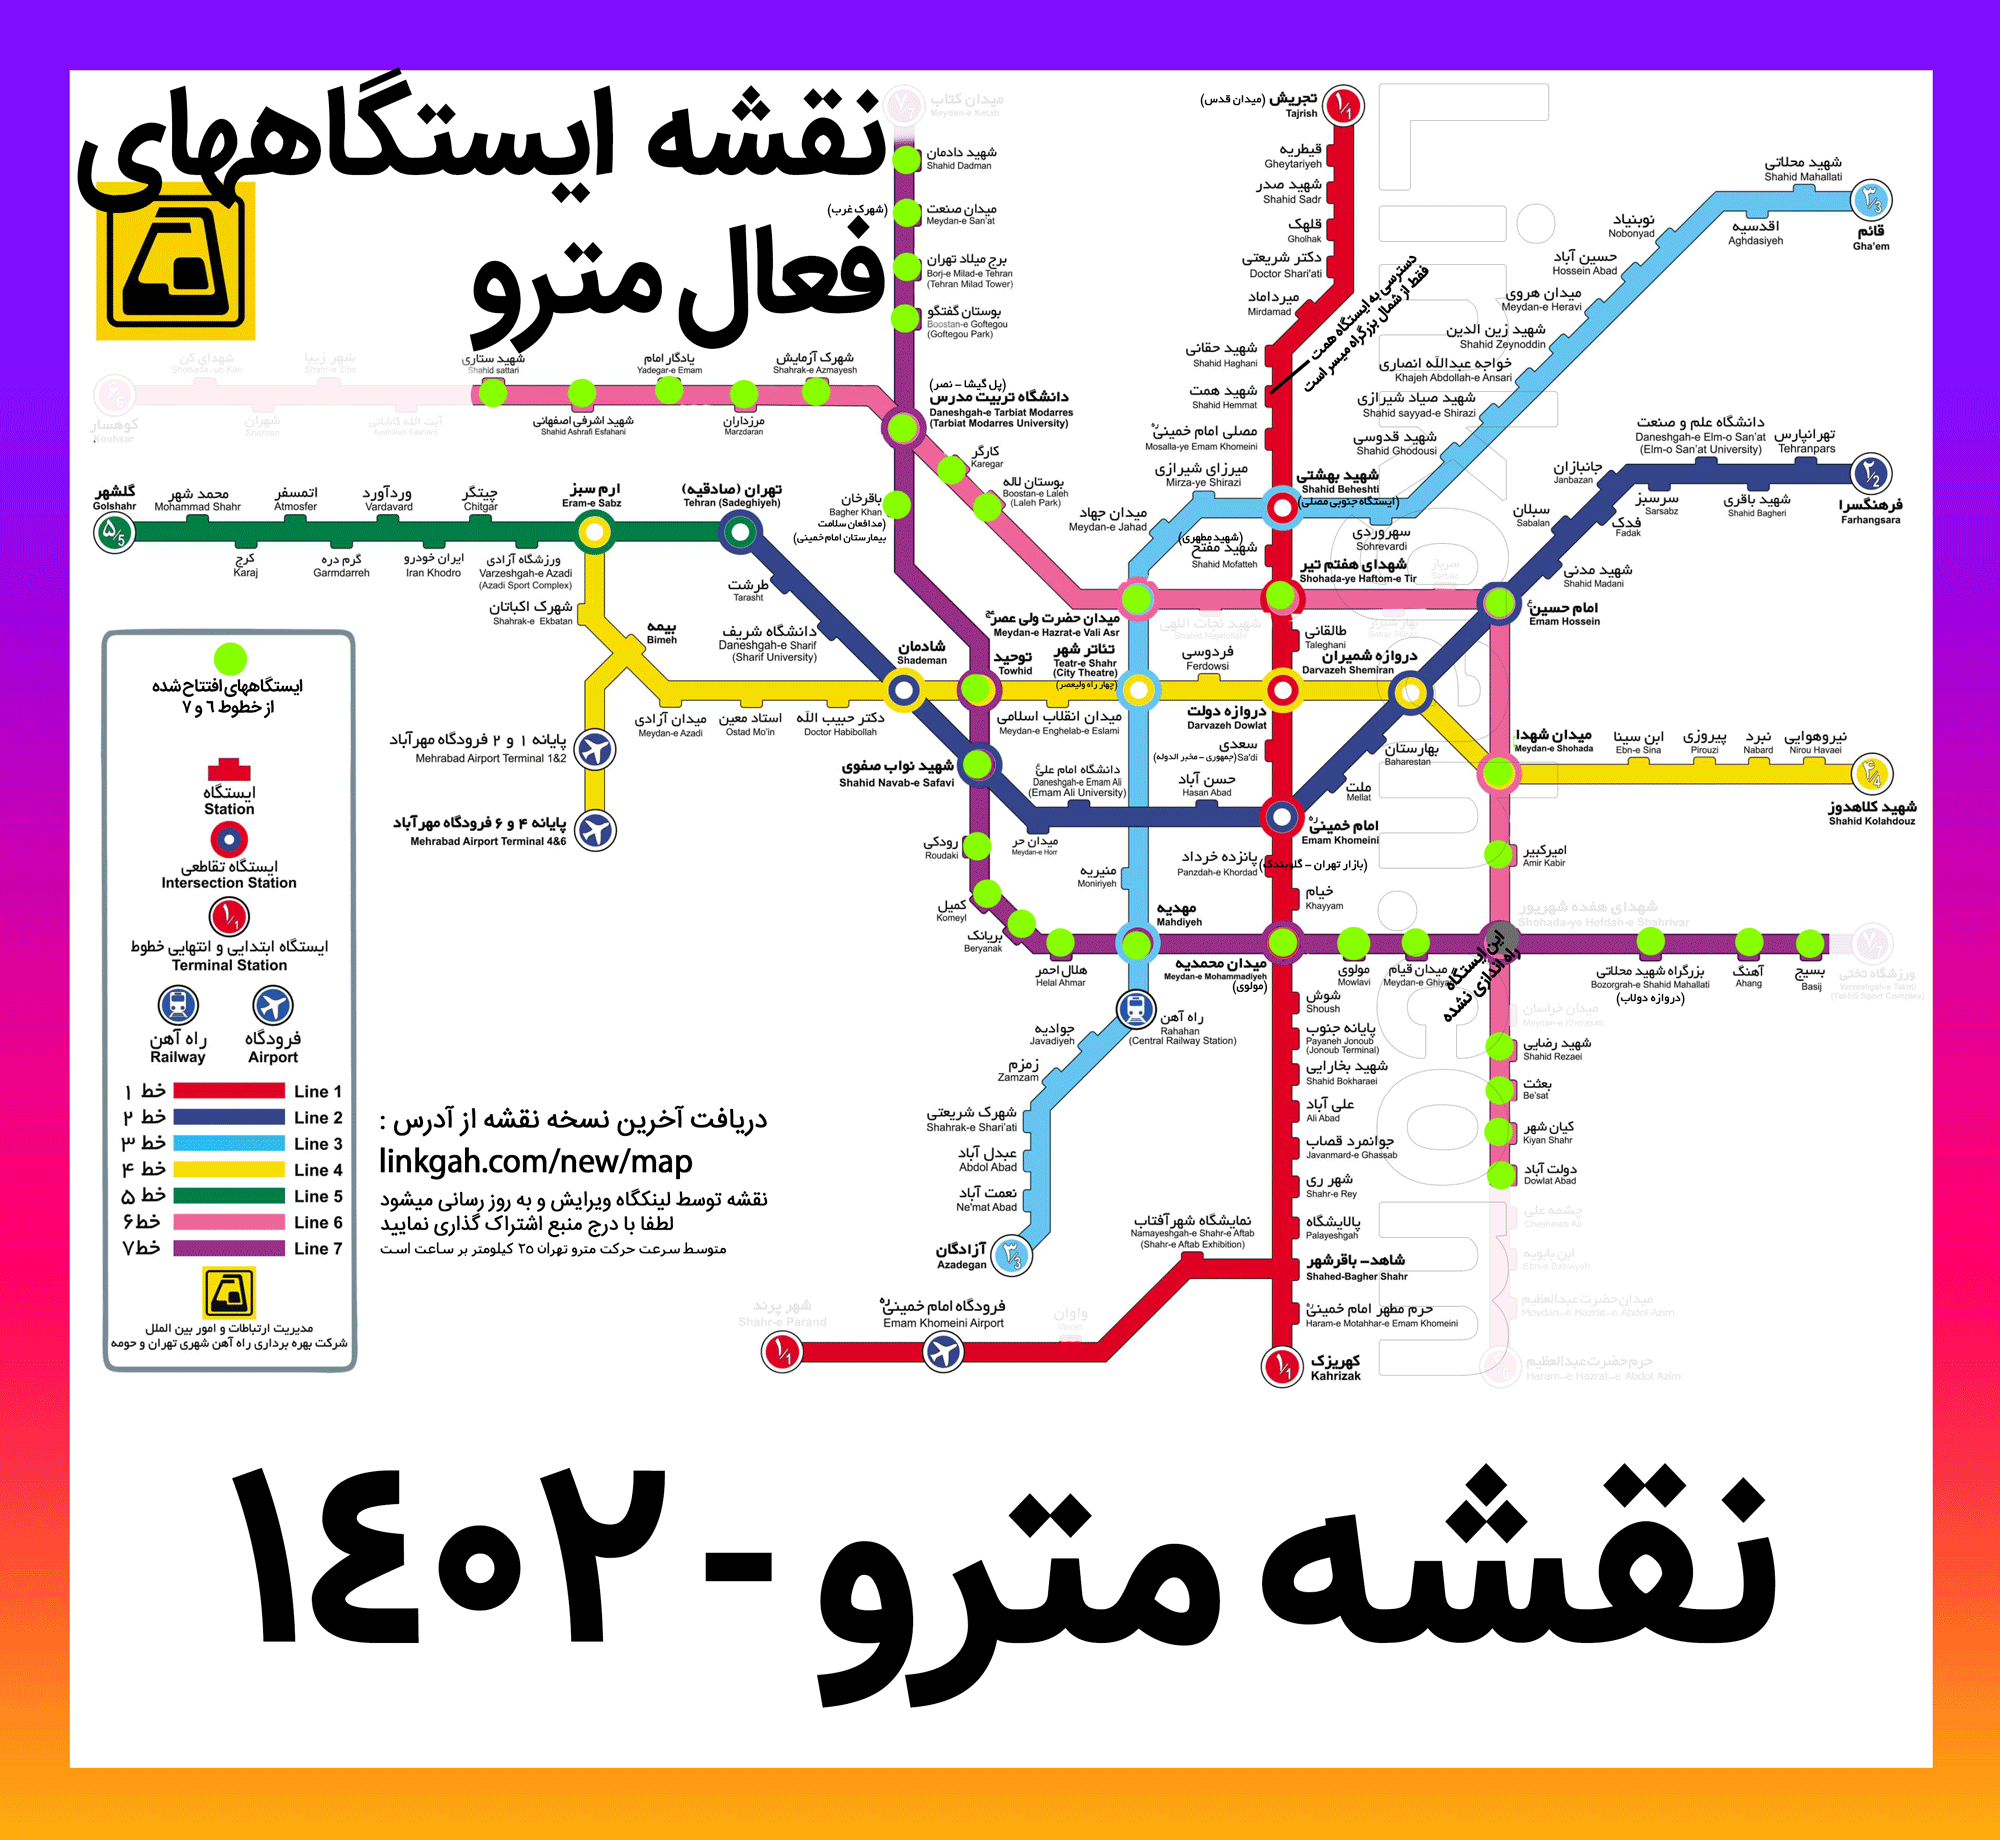 آخرین نسخه نقشه جدید مترو تهران فقط ایستگاههای افتتاح شده و فعال - نقشه 98 99